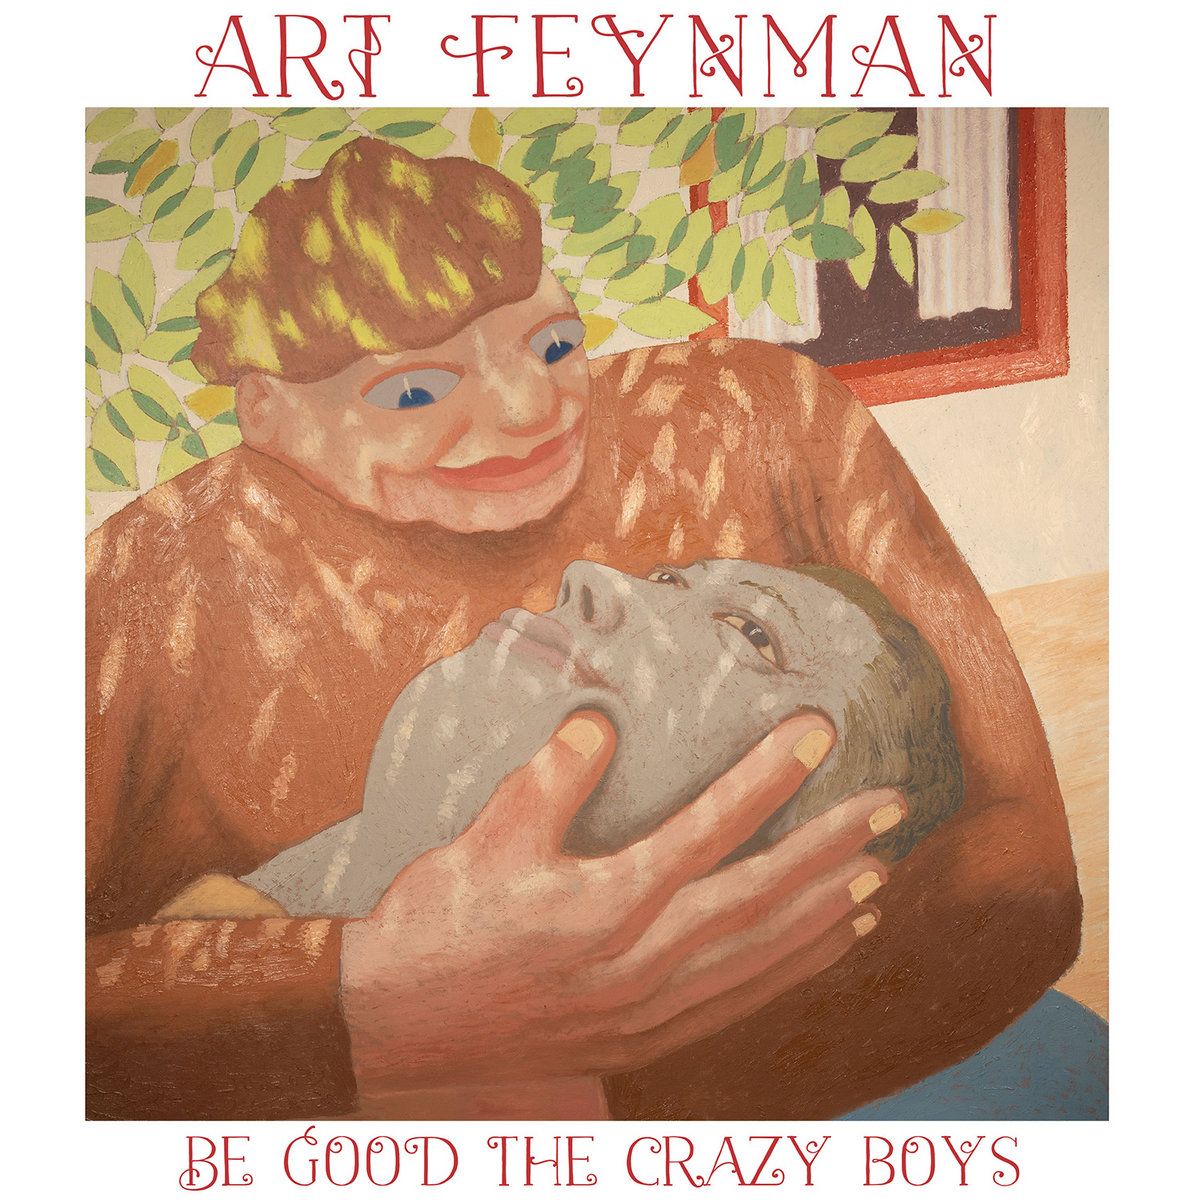 ART FEYNMAN / BE GOOD THE CRAZY BOYS (LP)